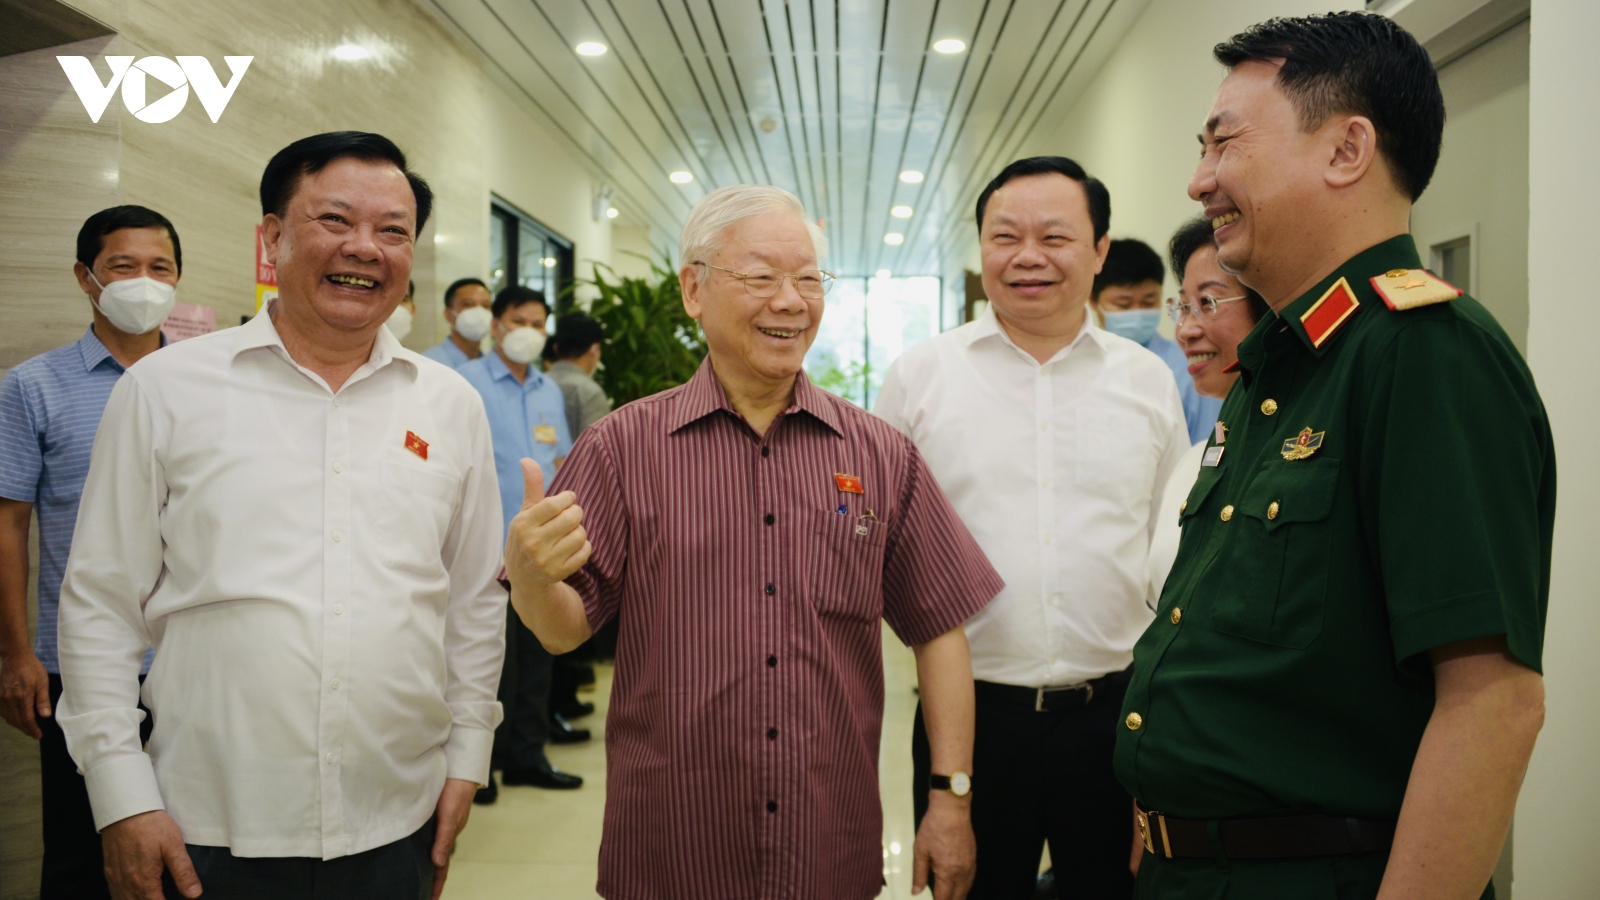 Tổng Bí thư Nguyễn Phú Trọng: "Cán bộ chống tham nhũng mà tư túi thì tôi xử trước"